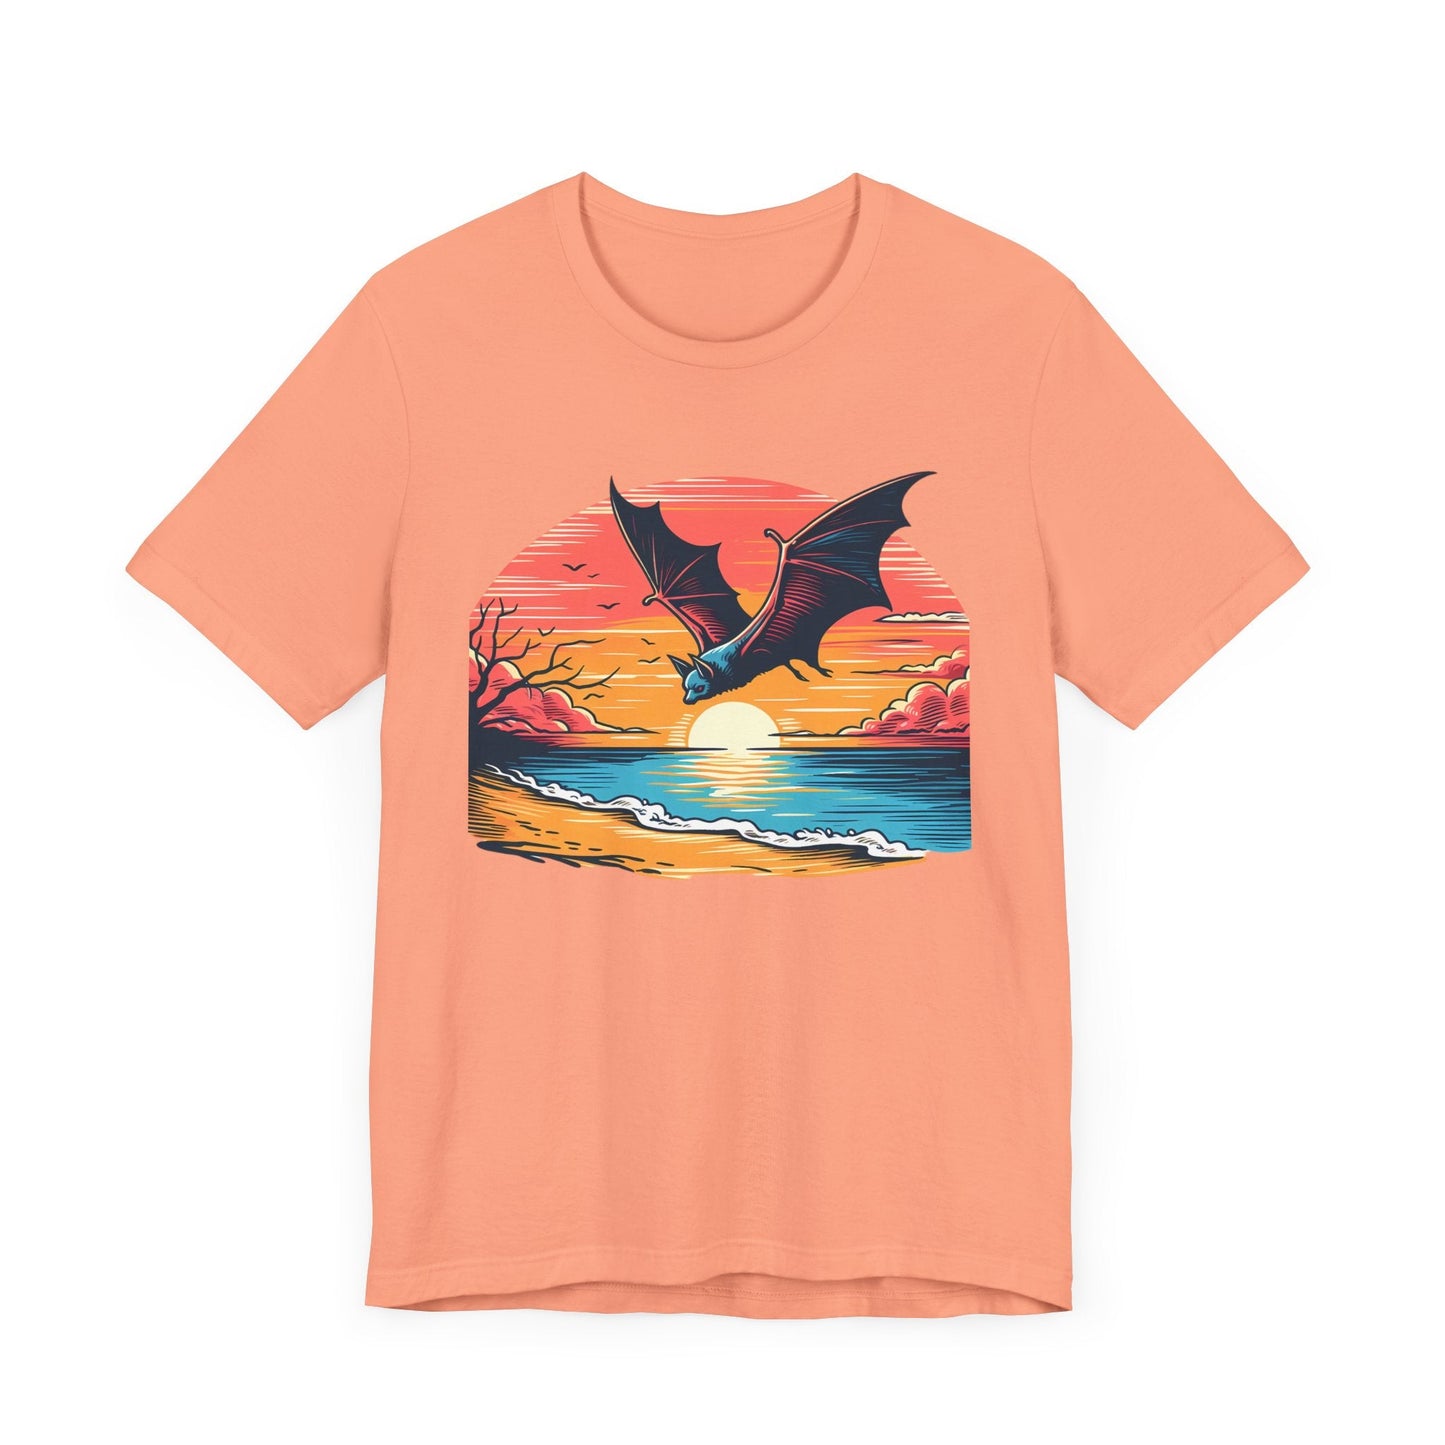 Sunset Bat Short Sleeve Tee ShirtT - ShirtVTZdesignsSunsetXSCottonCrew neckDTG